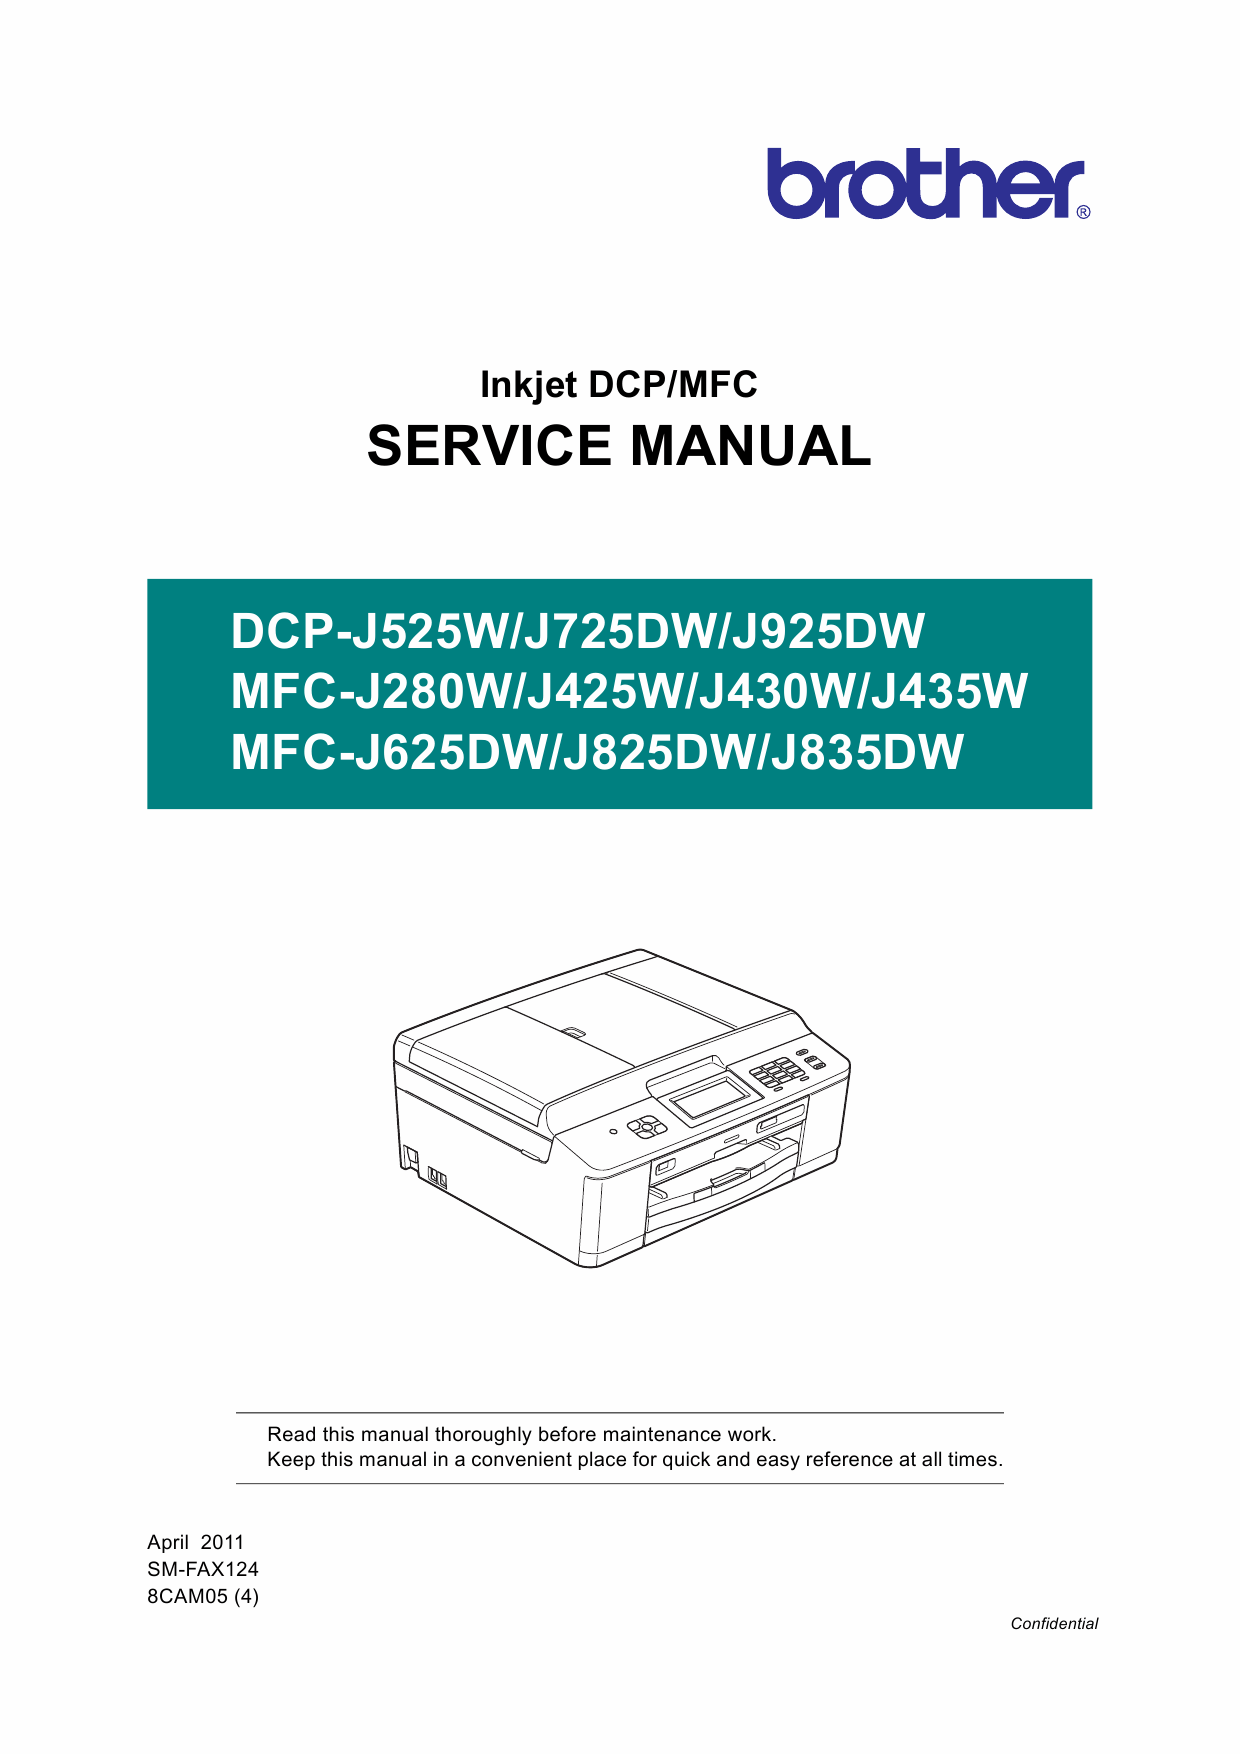 Honda service manuals